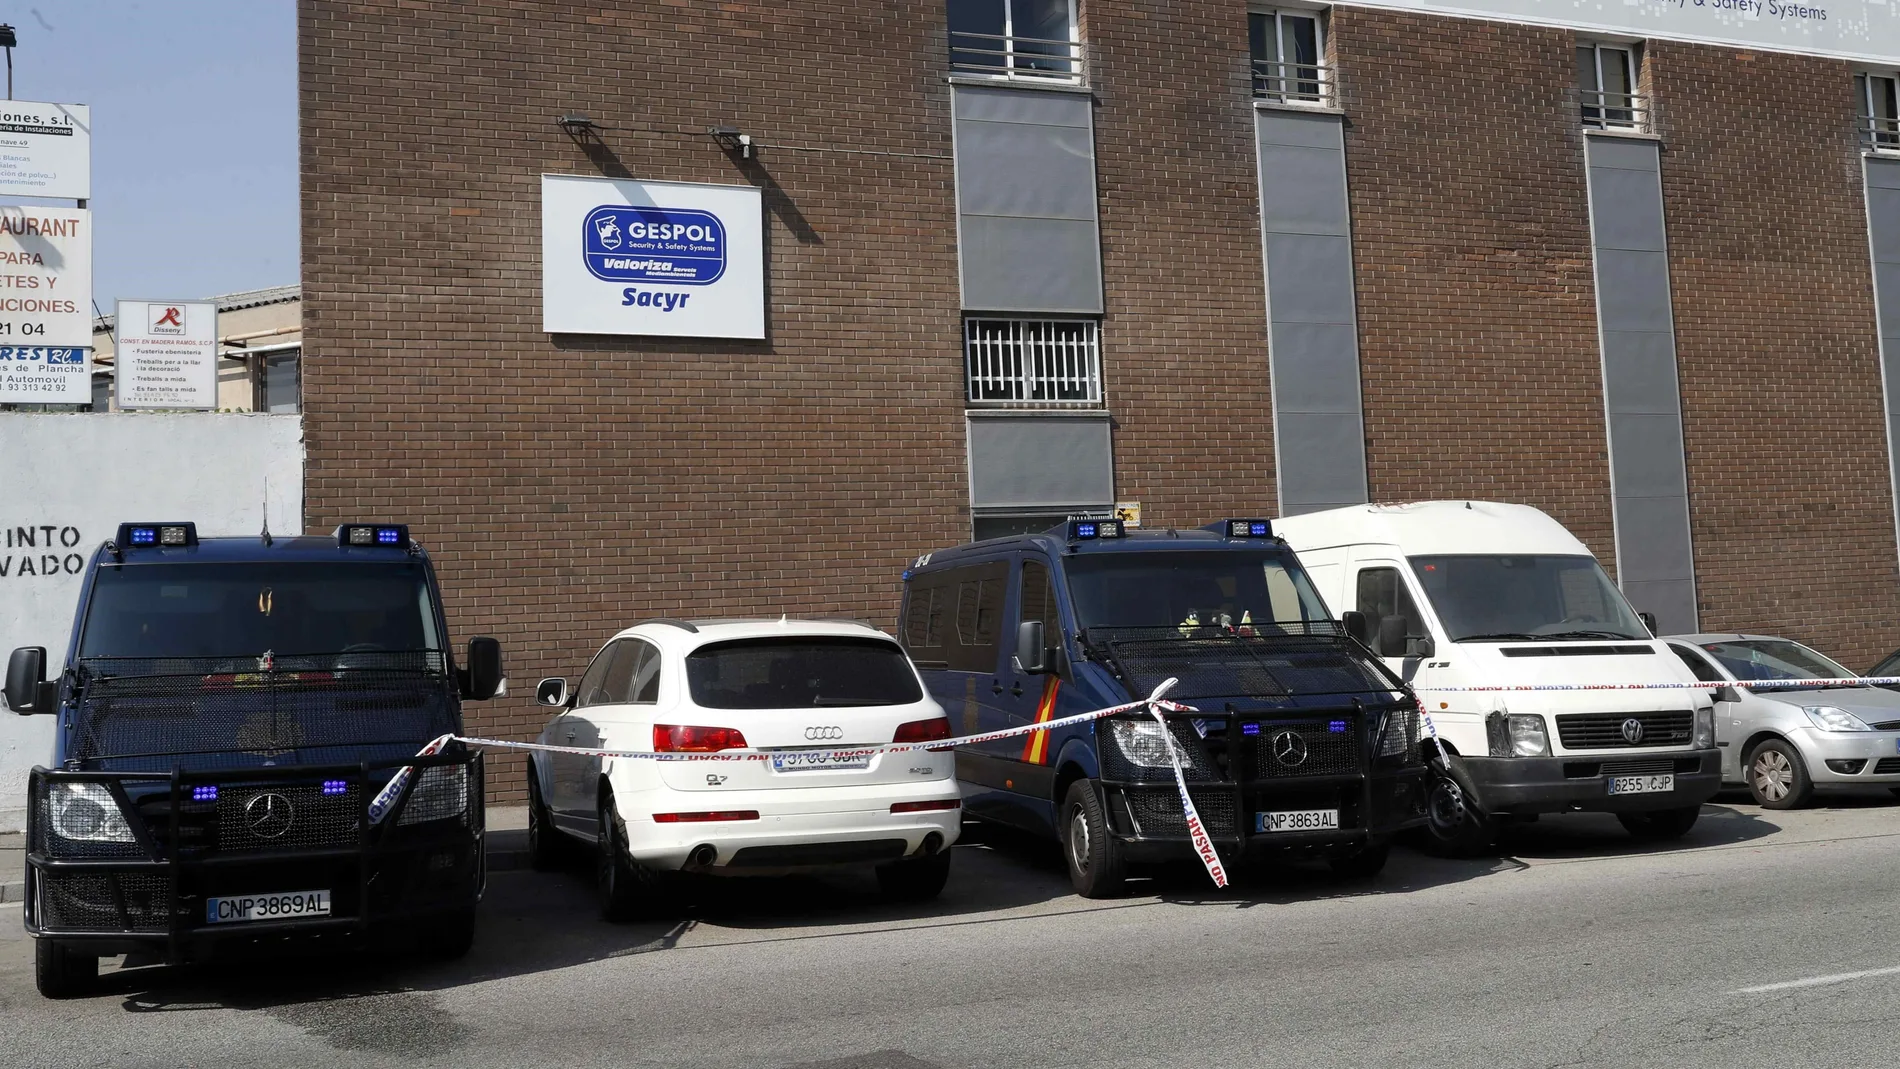 Vehículos policiales en los registros efectuados en la empresa Gespol, una filial de Sacyr.